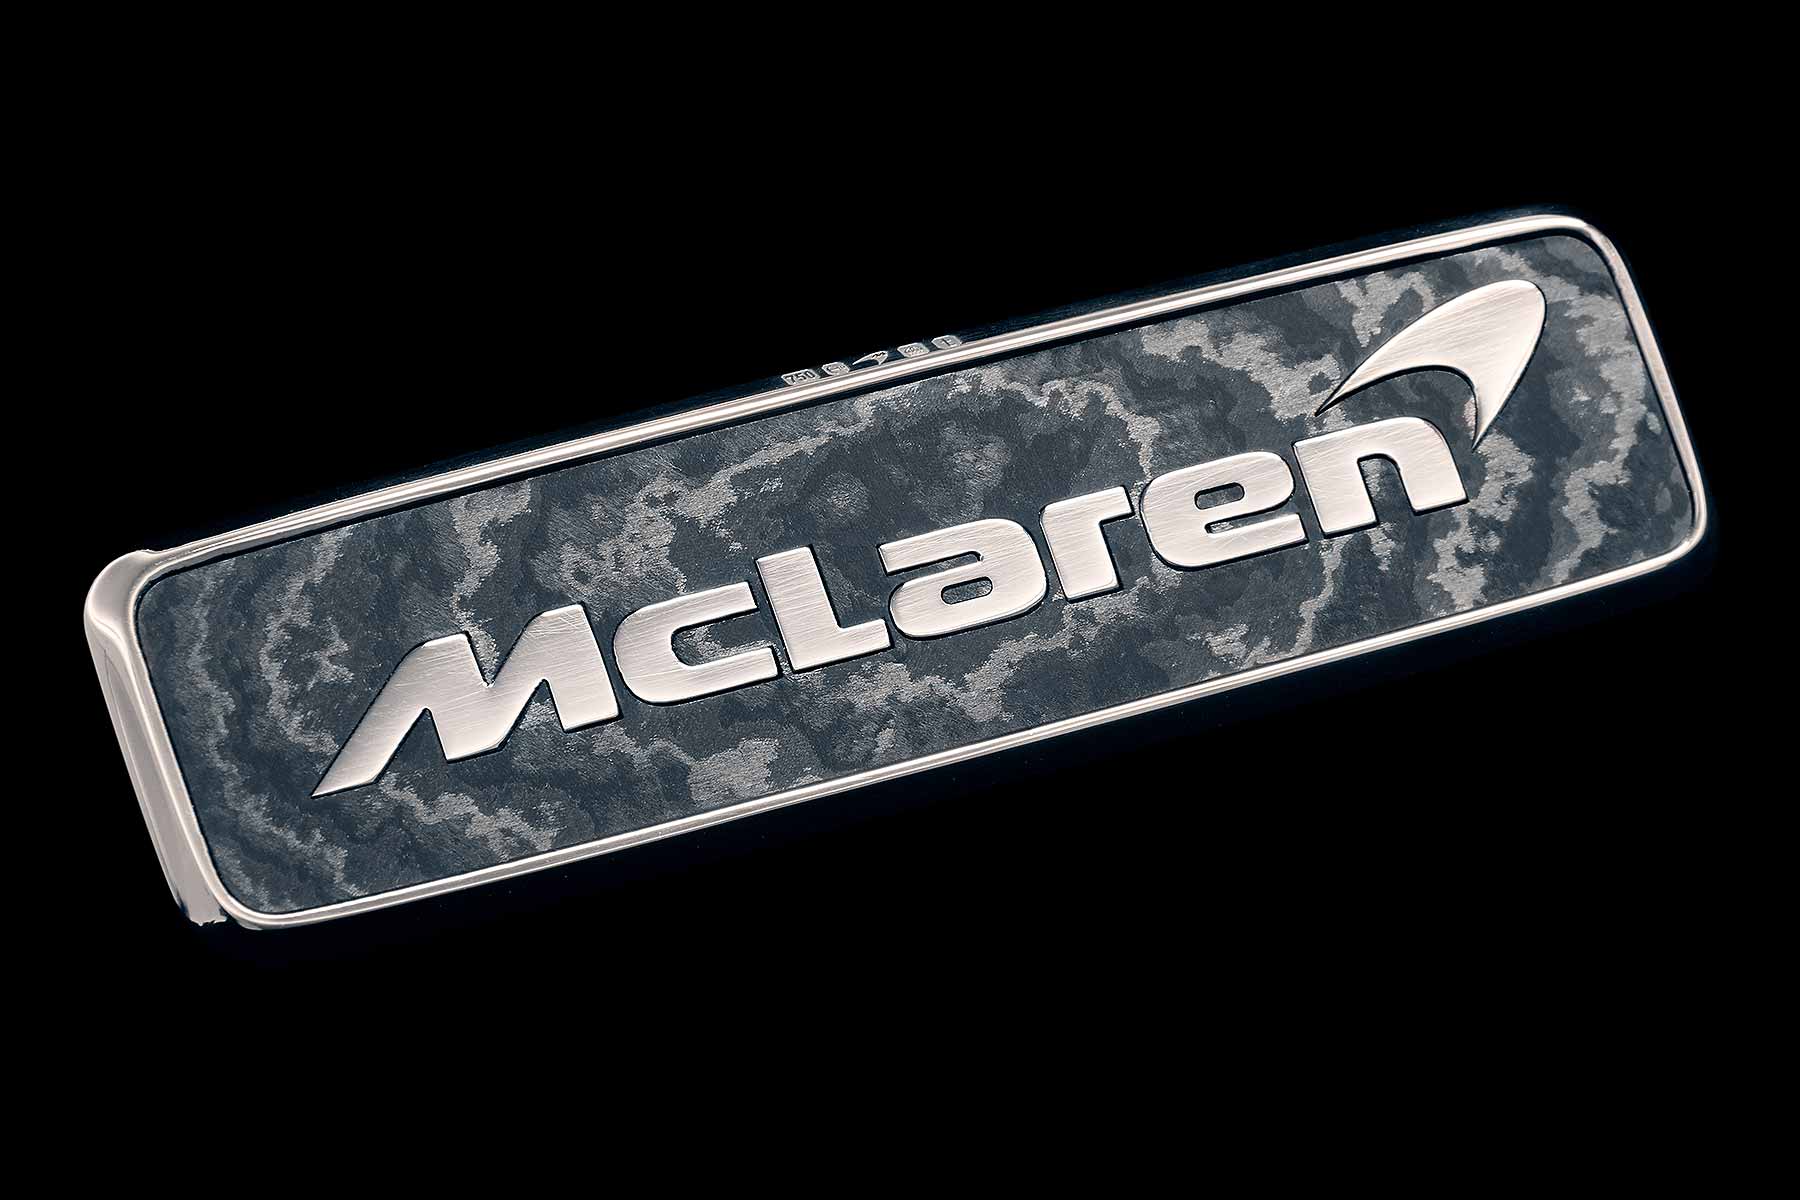 McLaren Speedtail white-gold badges